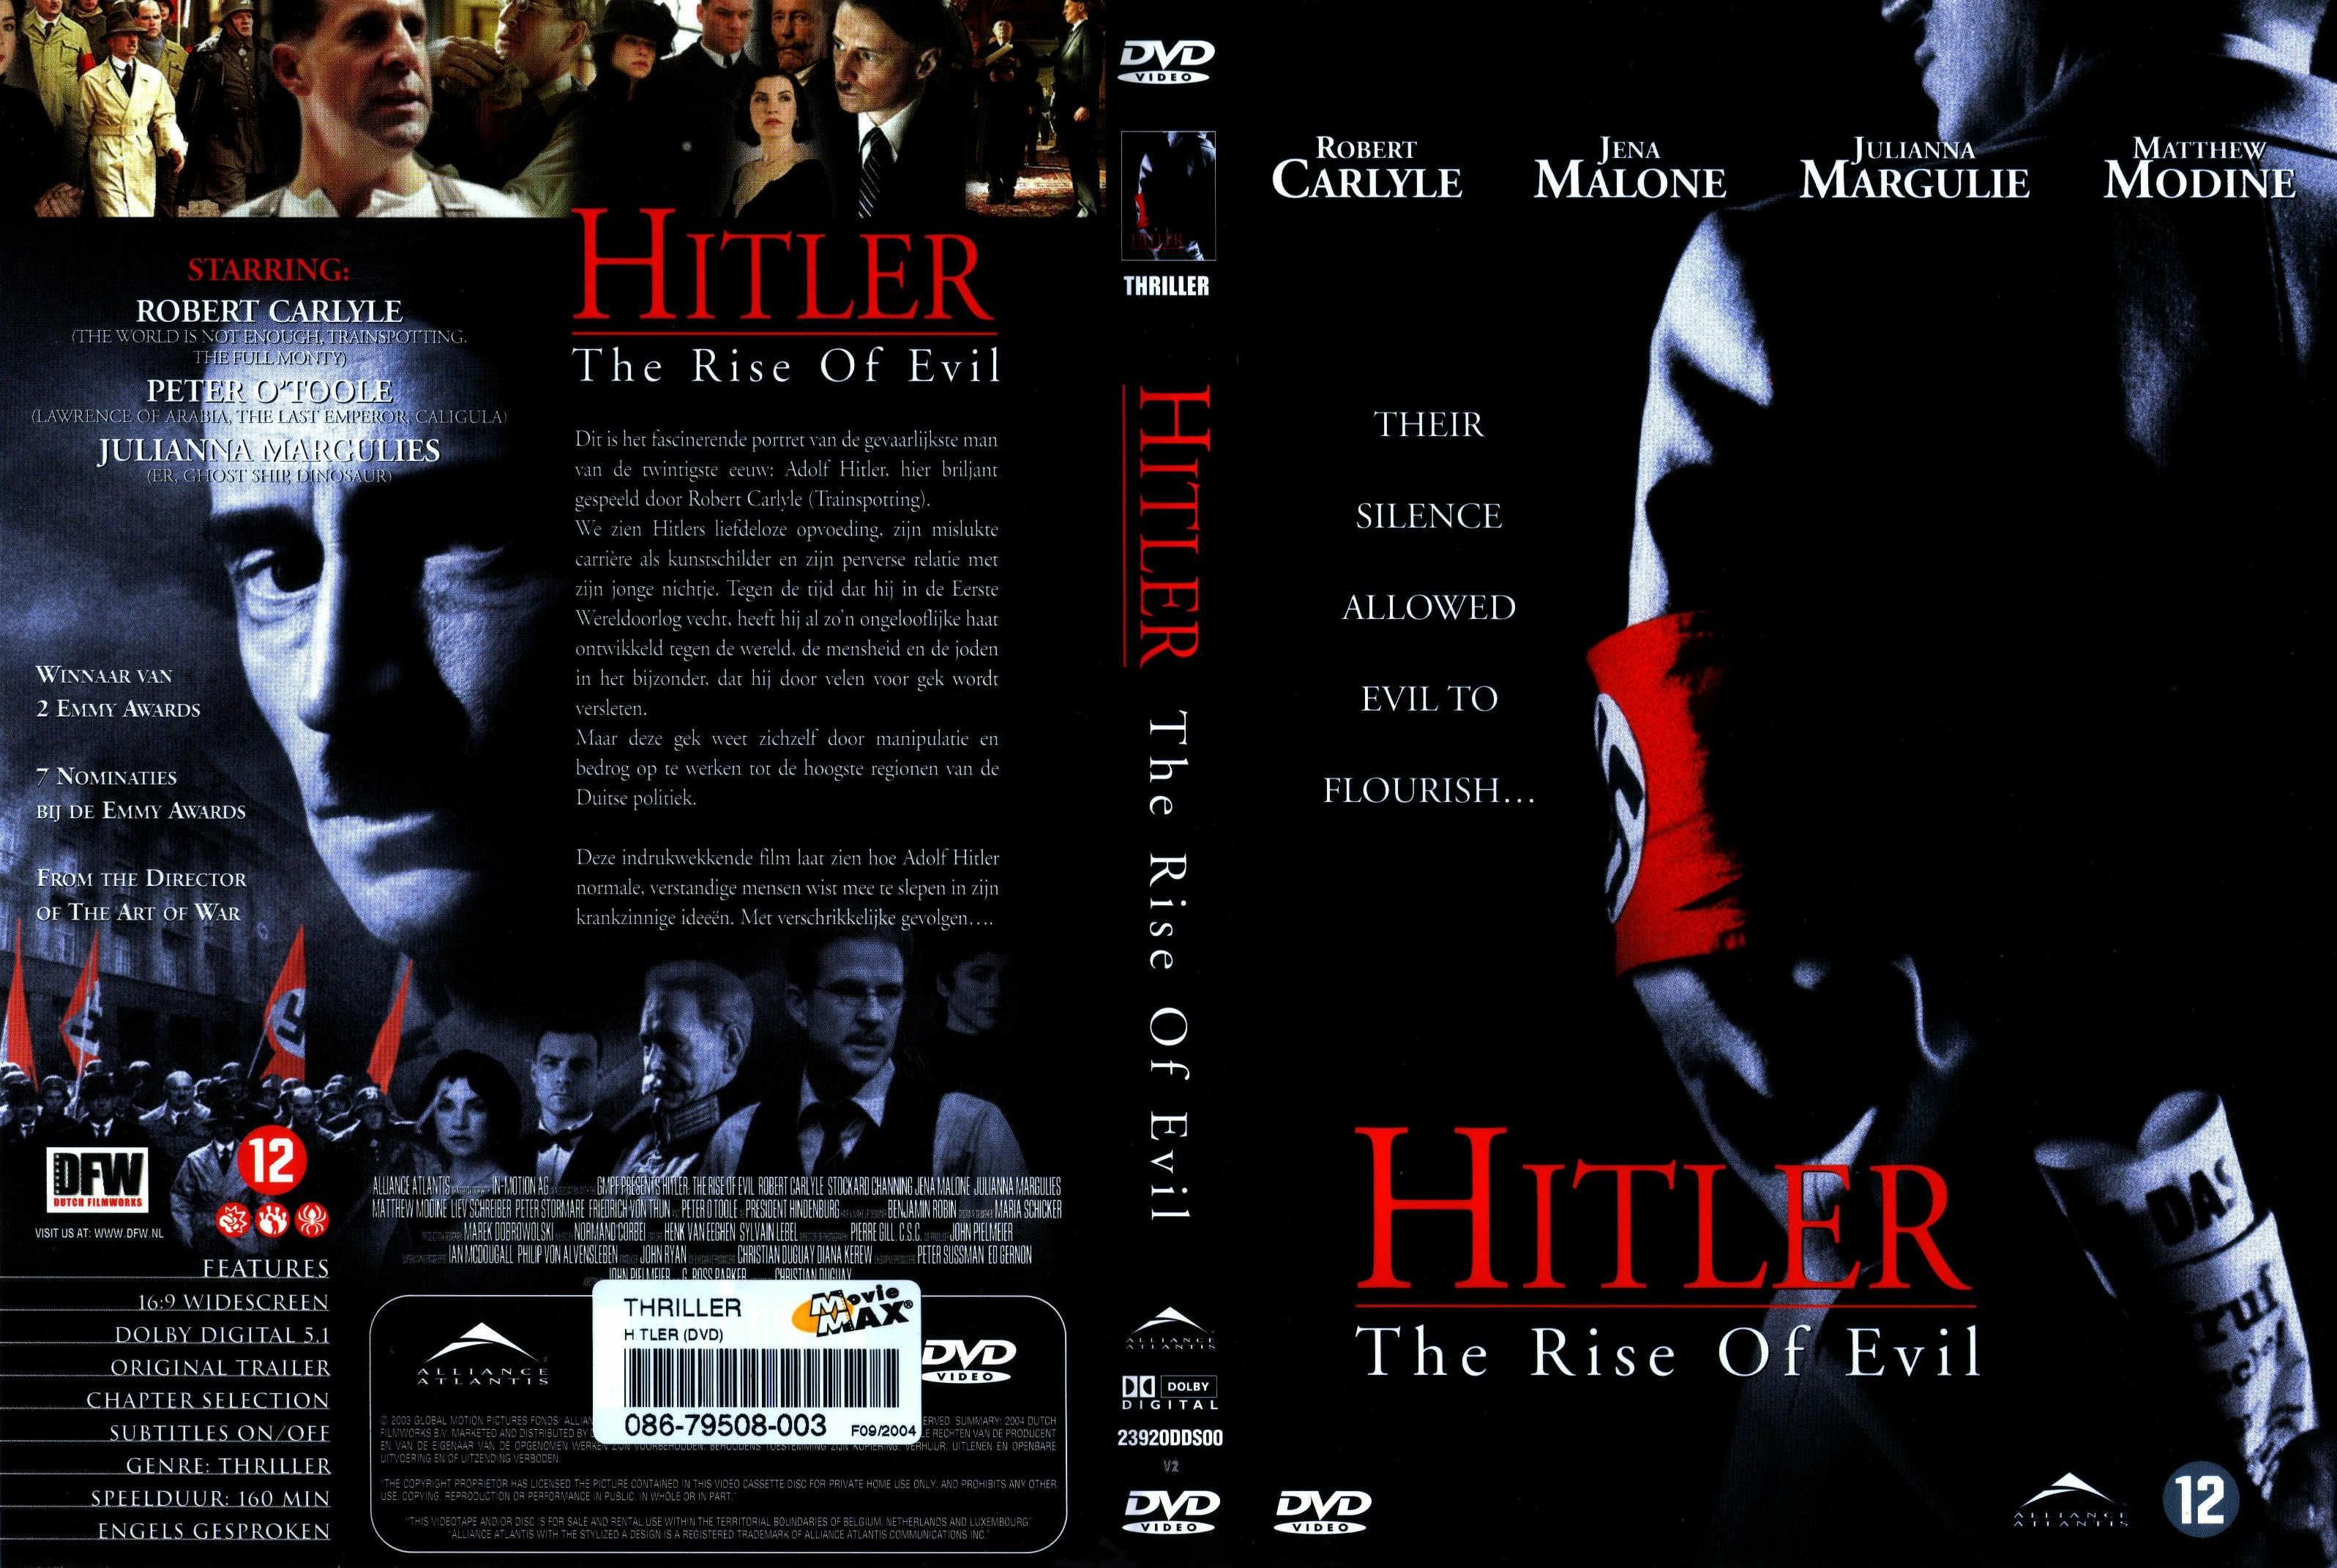 Hitler The Rise of Evil - 2003